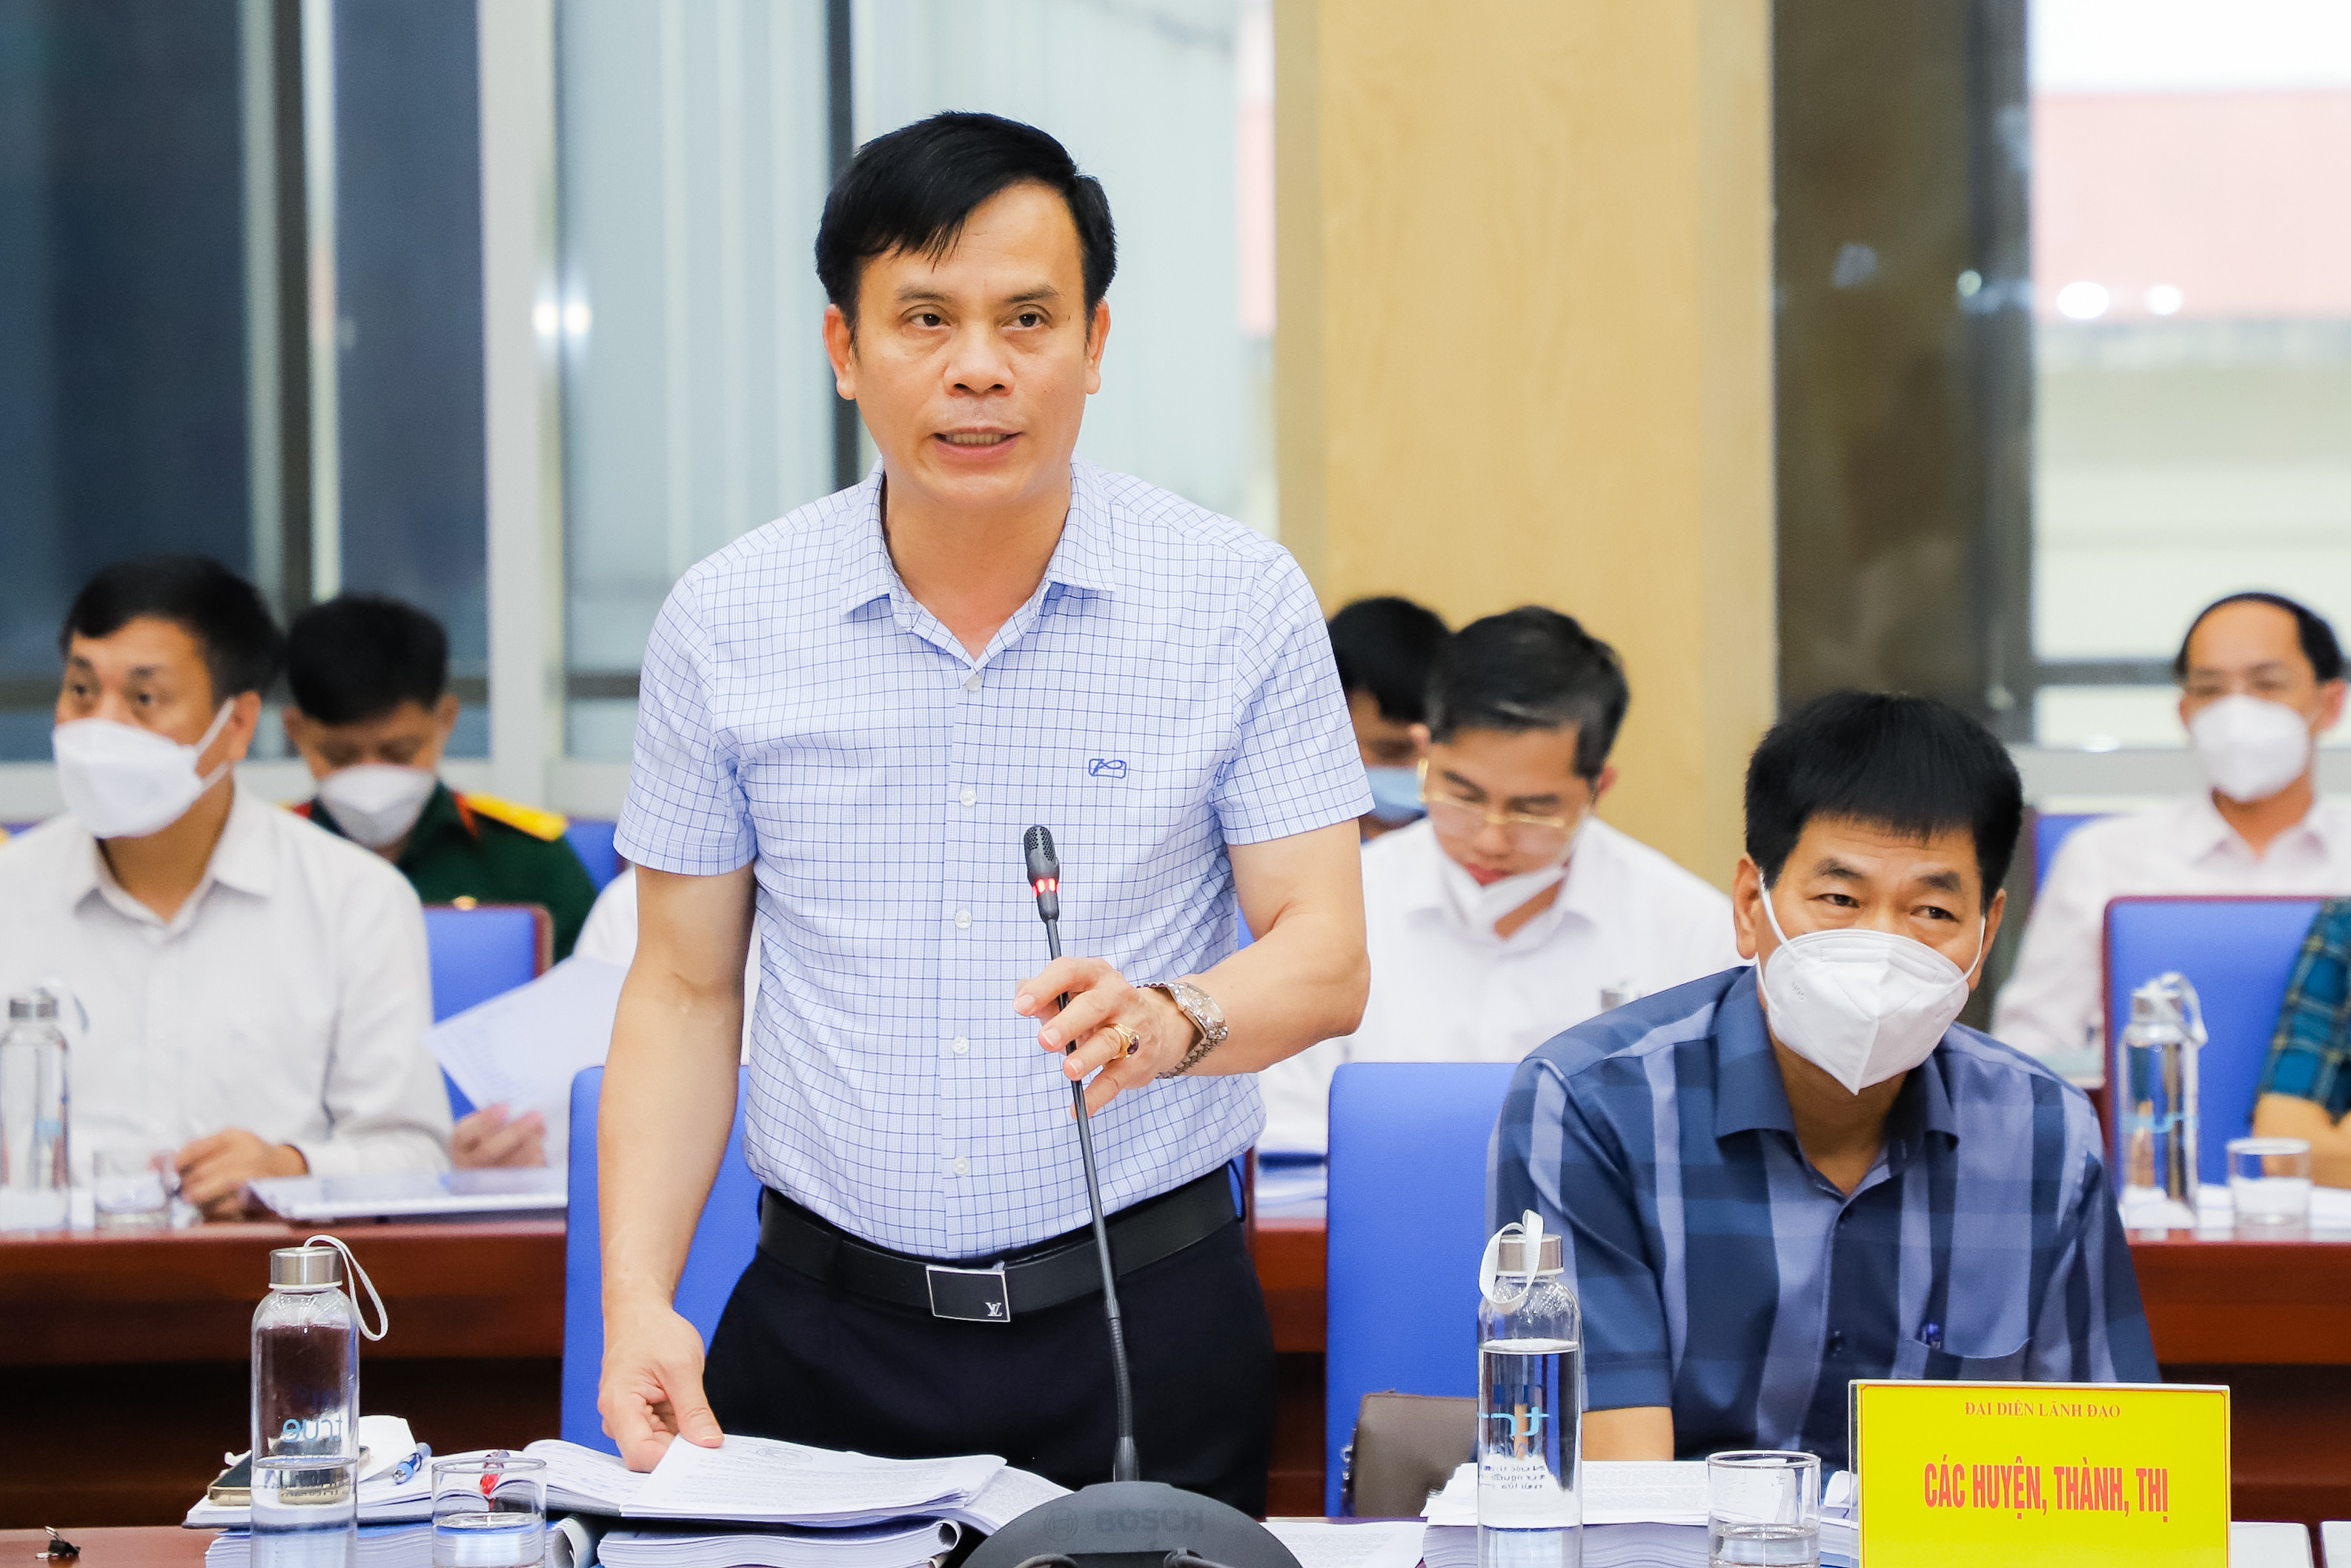 Đồng chí Trần Ngọc Tú - Chủ tịch UBND TP. Vinh đóng góp ý kiến vào dự thảo Quy hoạch tỉnh. Ảnh: Phạm Bằng